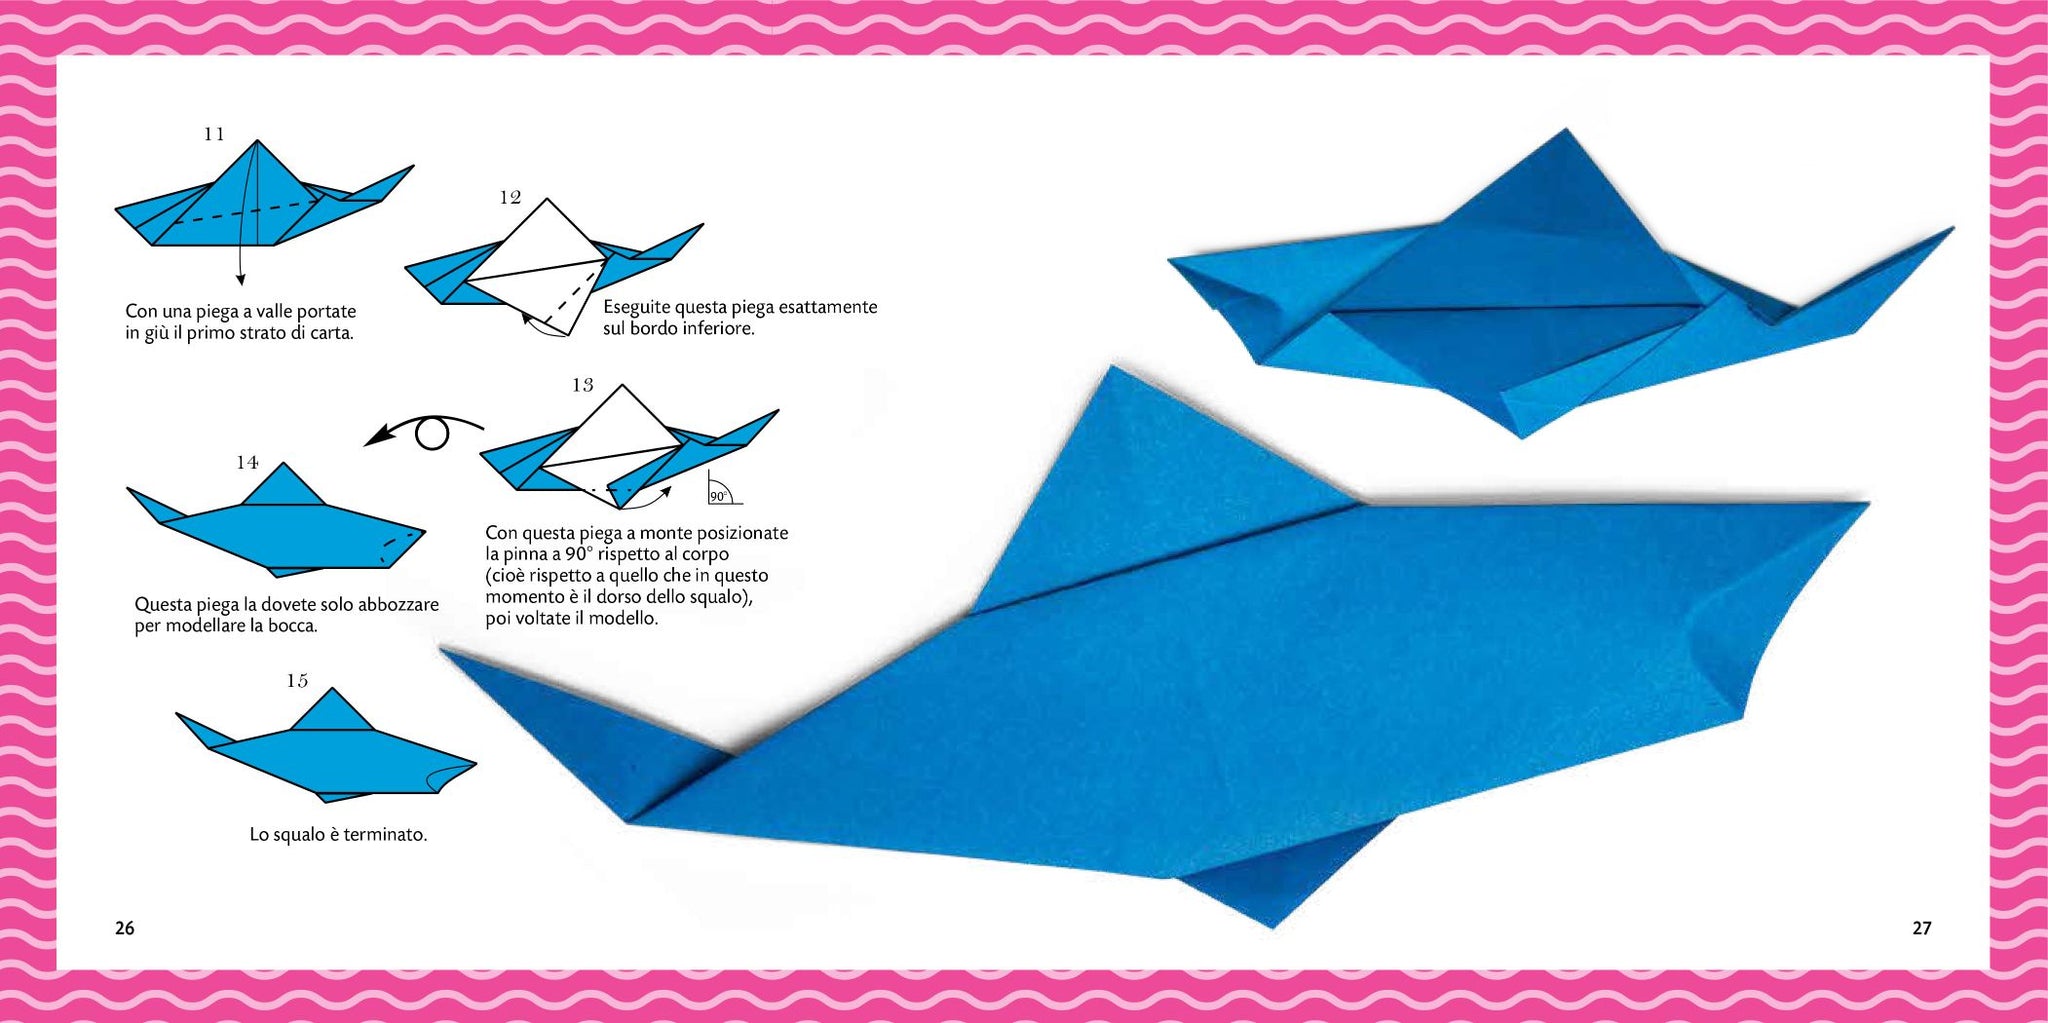 Strappa e piega - Origami del mare